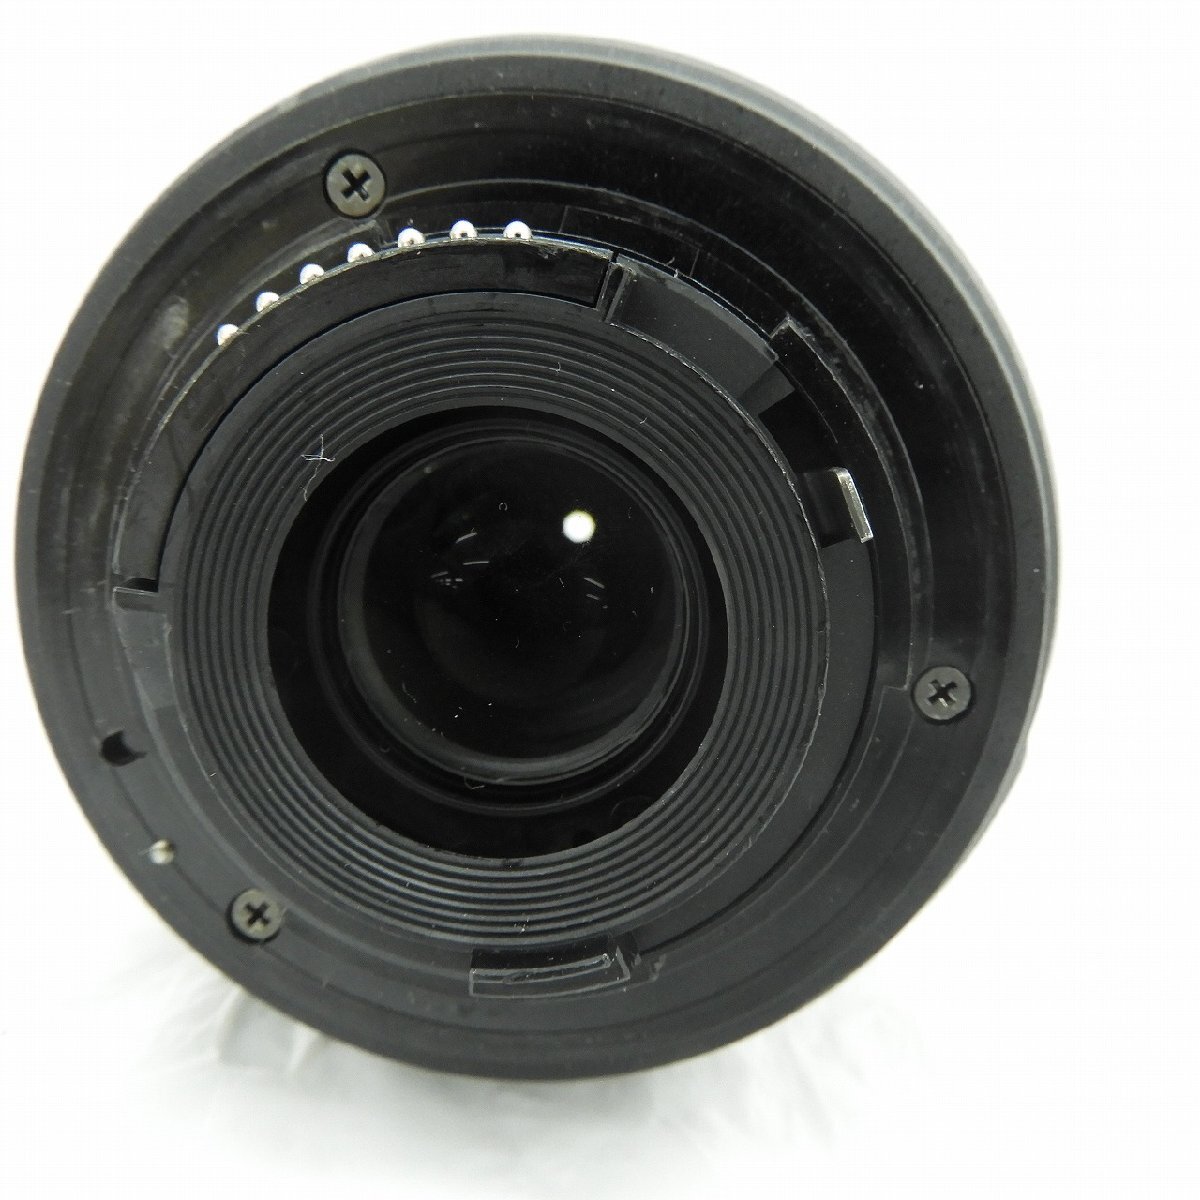 [ secondhand goods ]Nikon Nikon camera lens AF-S DX NIKKOR 18-55mm f3.5-5.6 G VR 11580428 0519